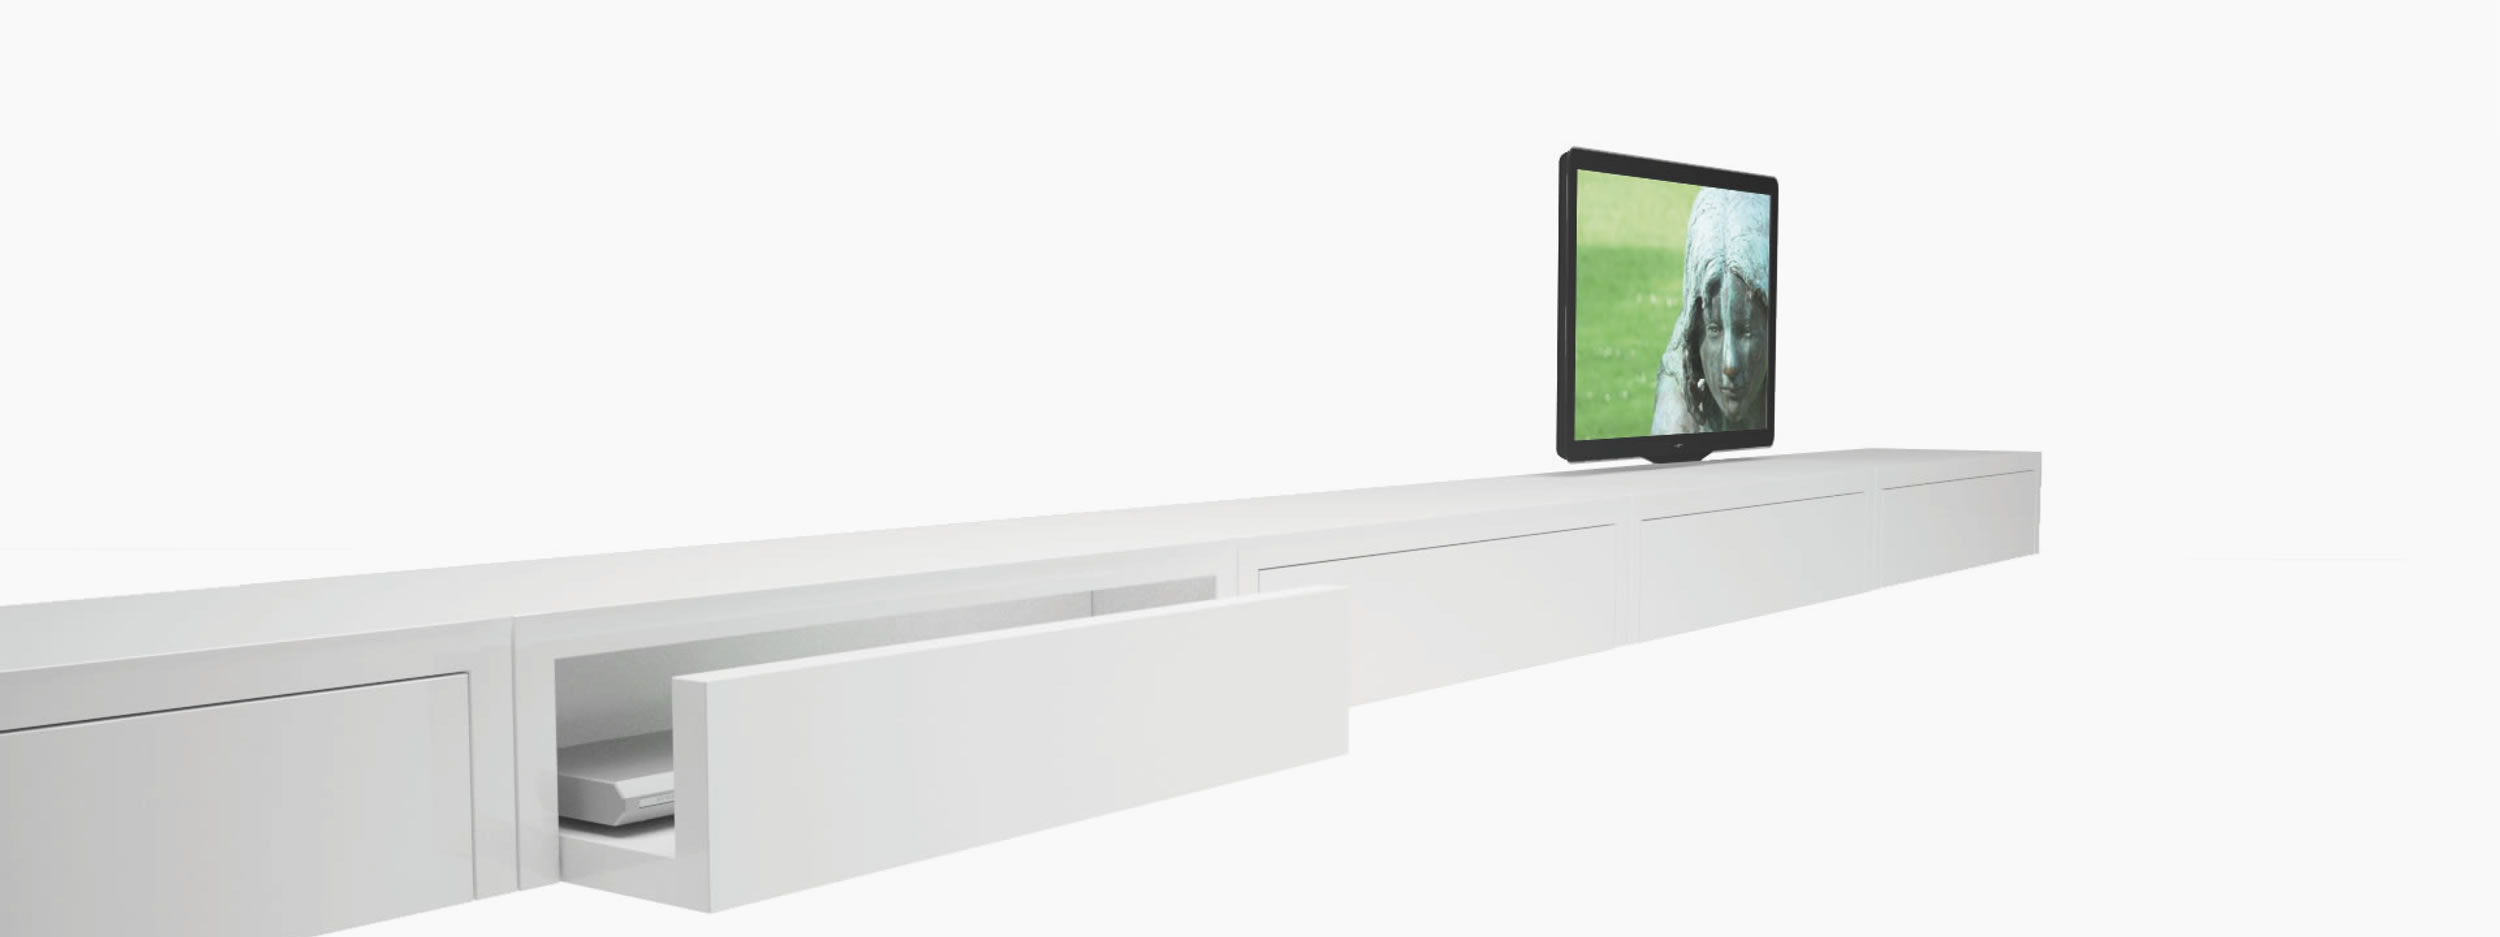 Sideboard quader weiss white room Buero sculptural furniture Sideboards FS 50 FELIX SCHWAKE RECHTECK